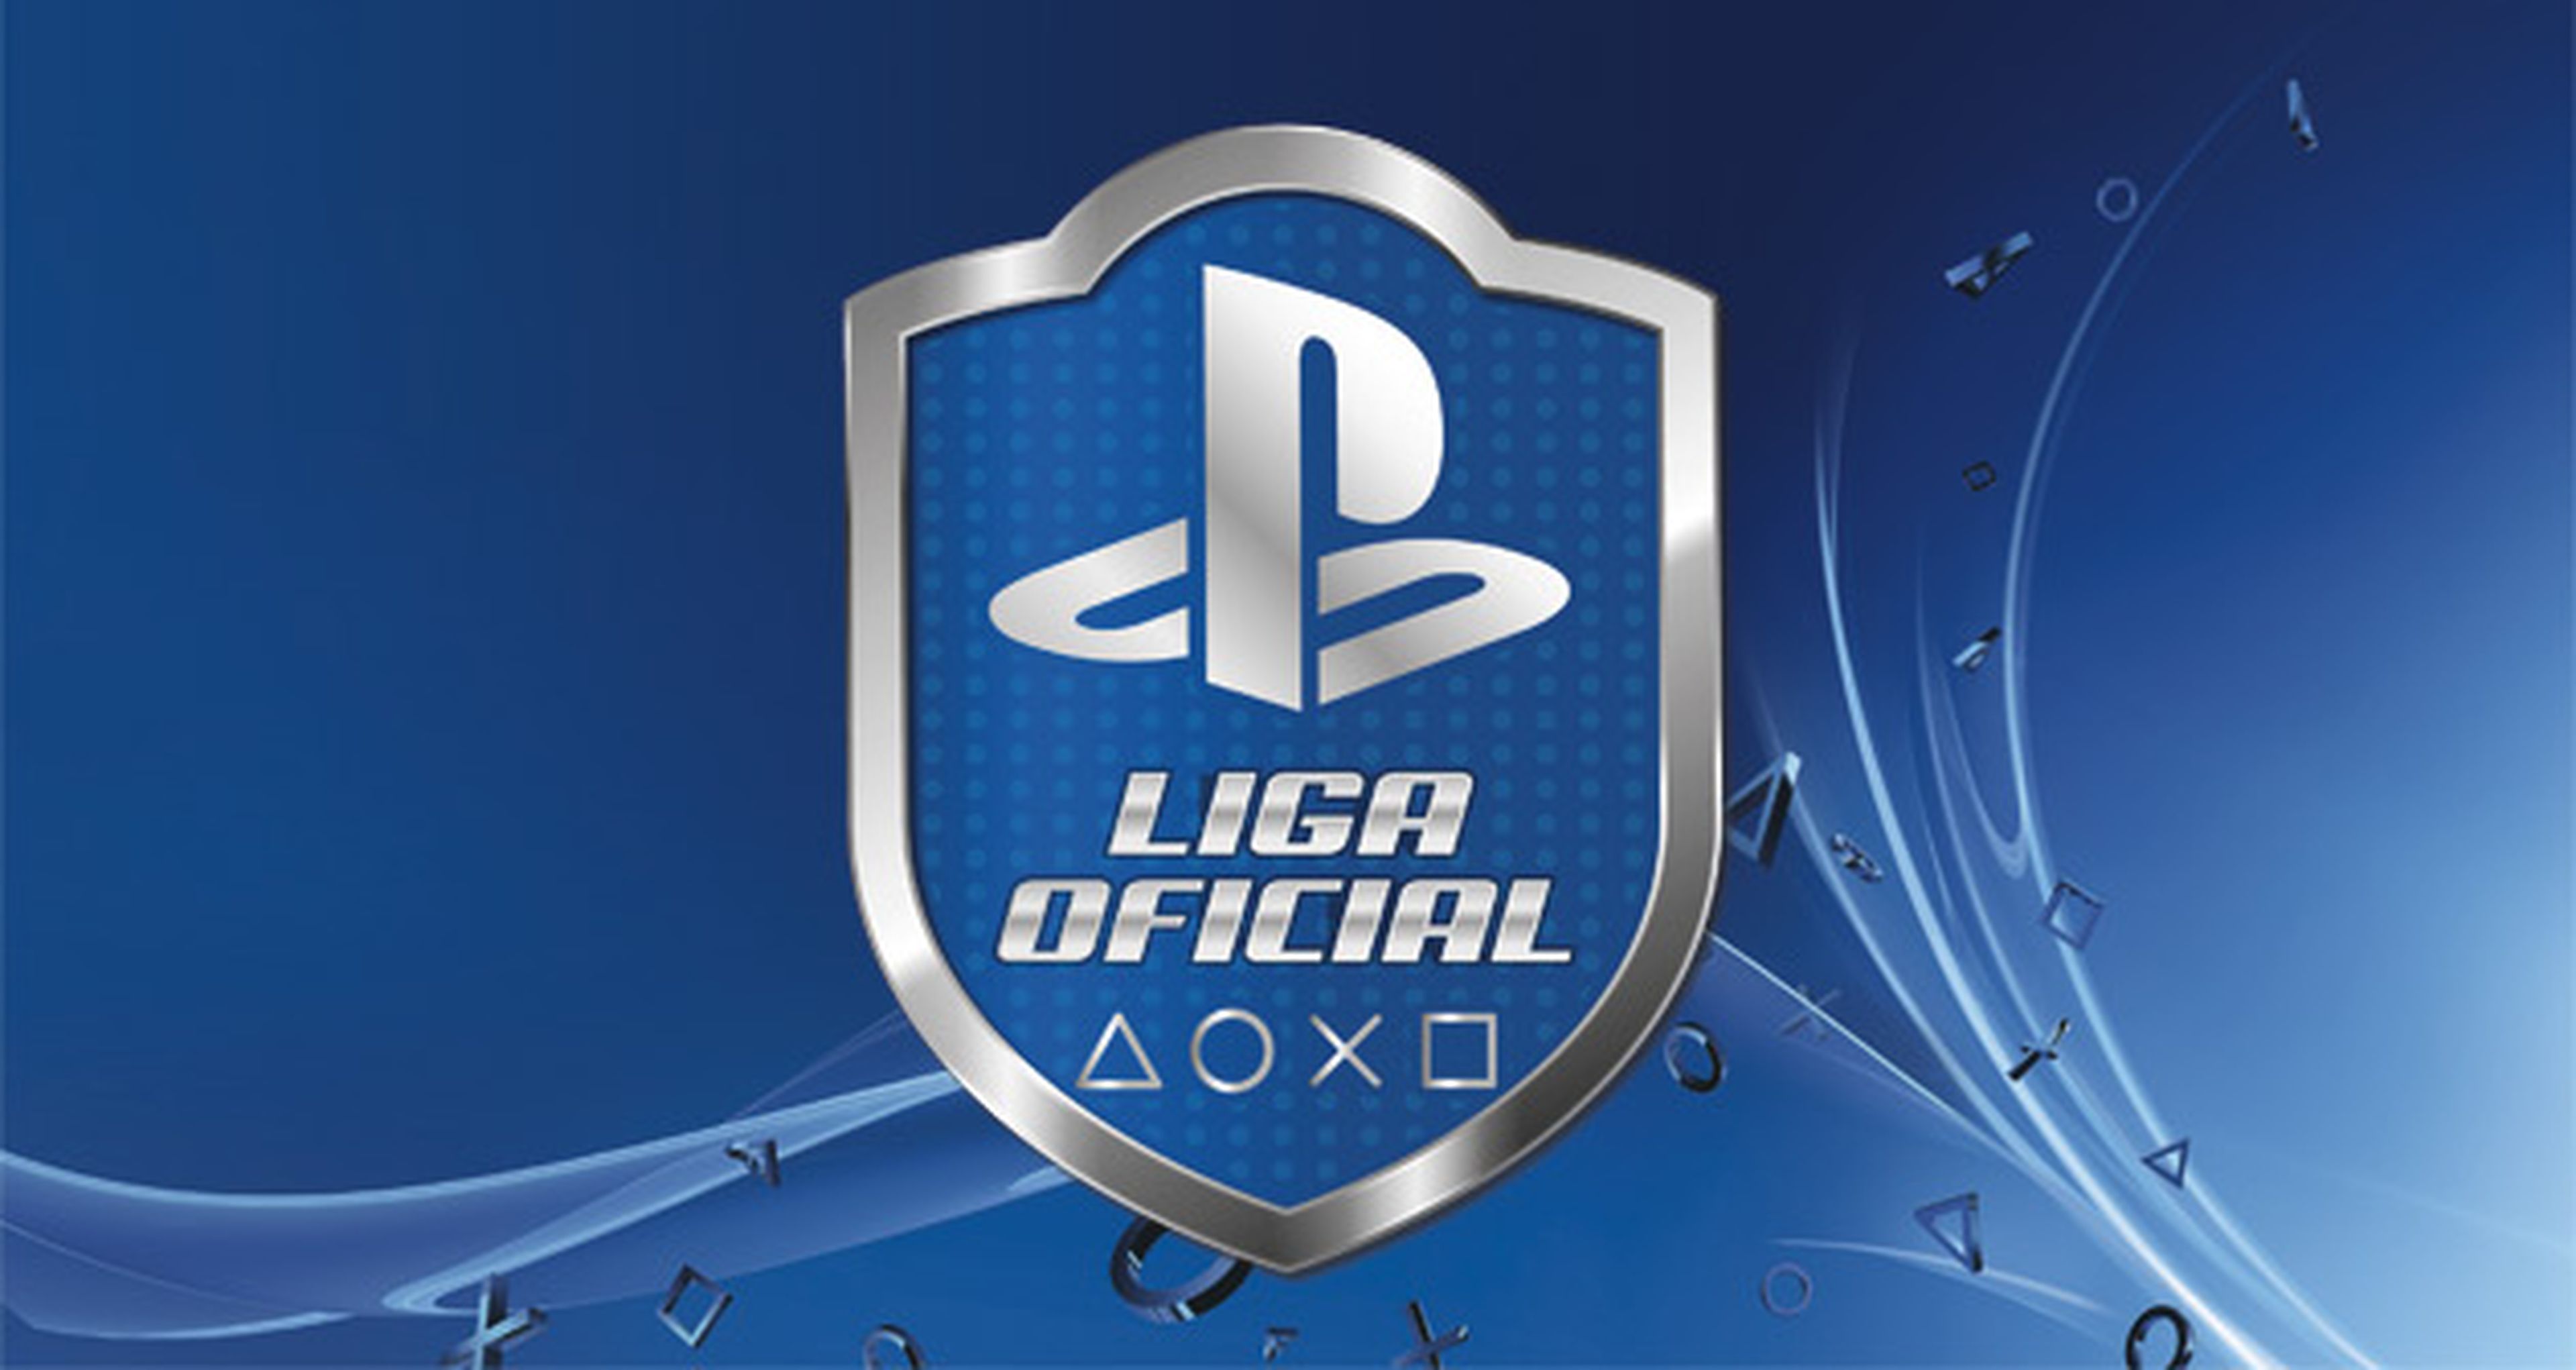 Ya está aquí la Temporada 5 de la Liga Oficial PlayStation